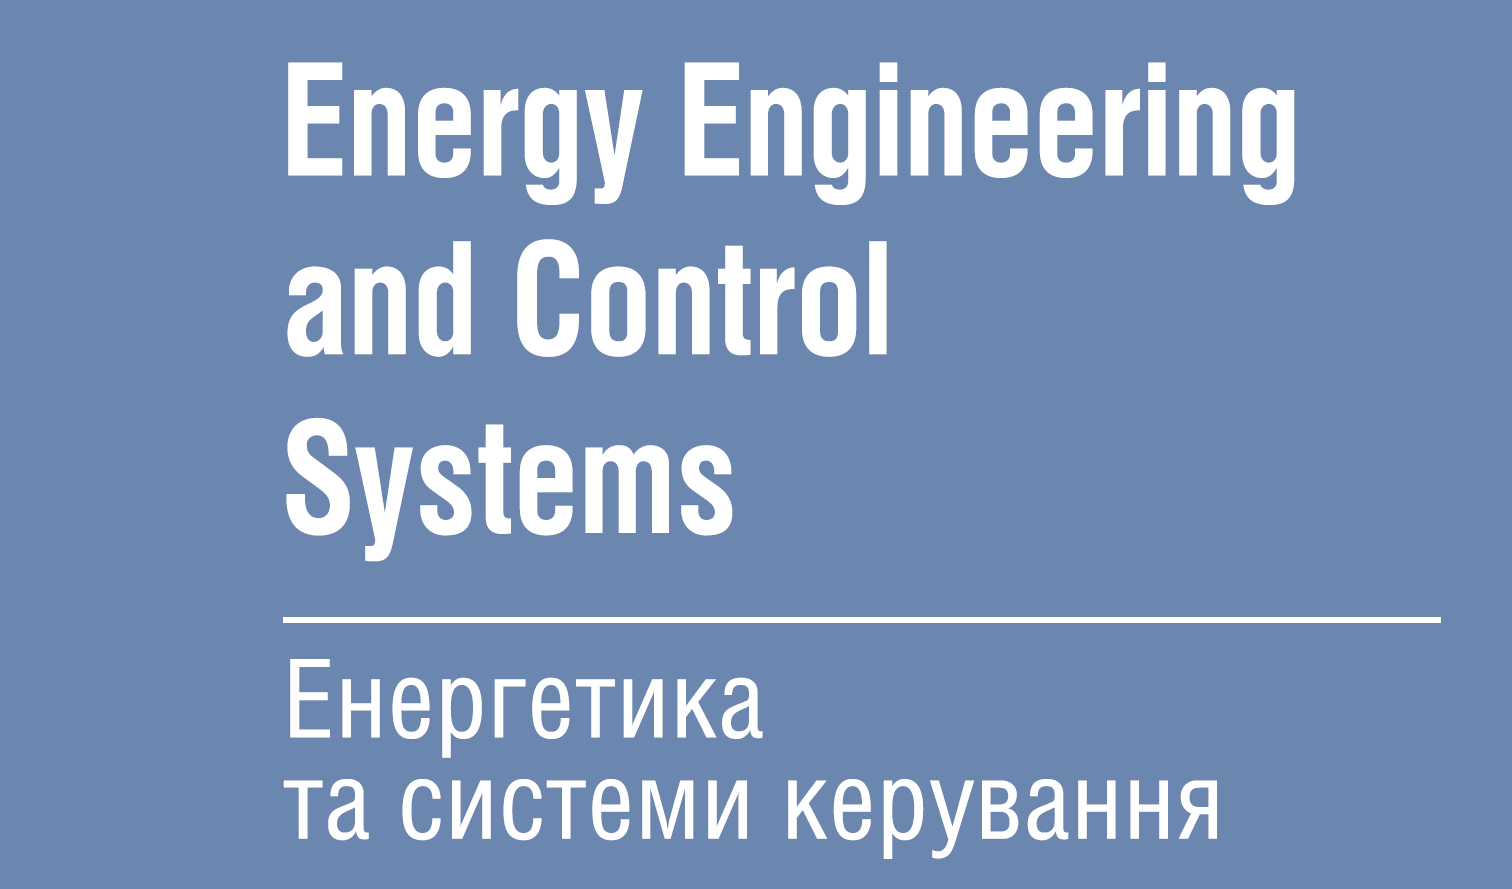 Енергетика та системи керування